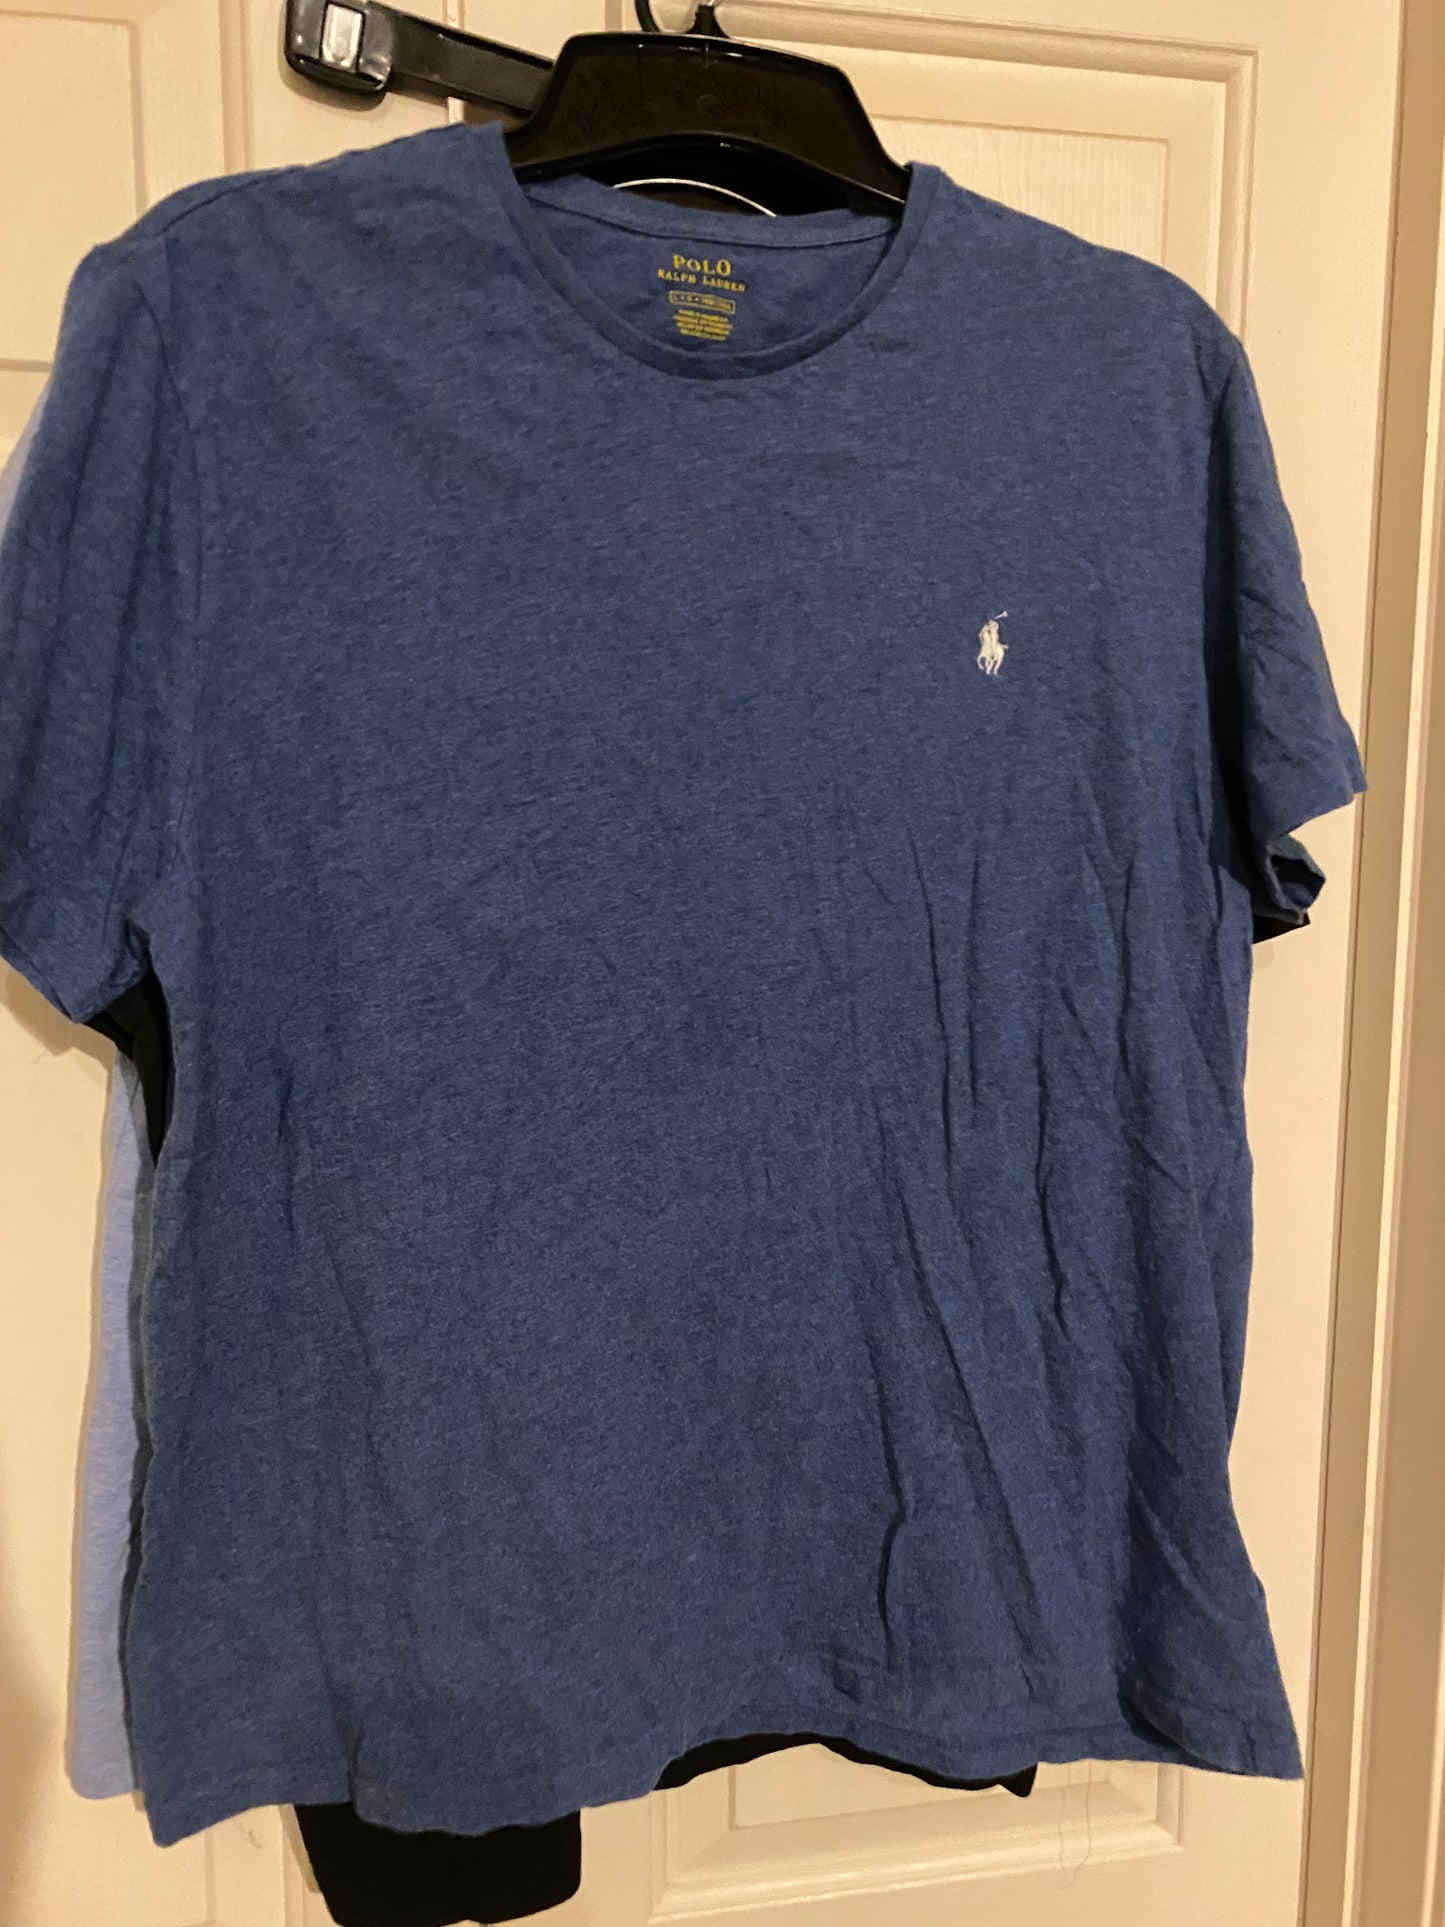 Polo Ralph Lauren Mens T-Shirt Adult Large Light Blue Short Sleeve T-Shirt